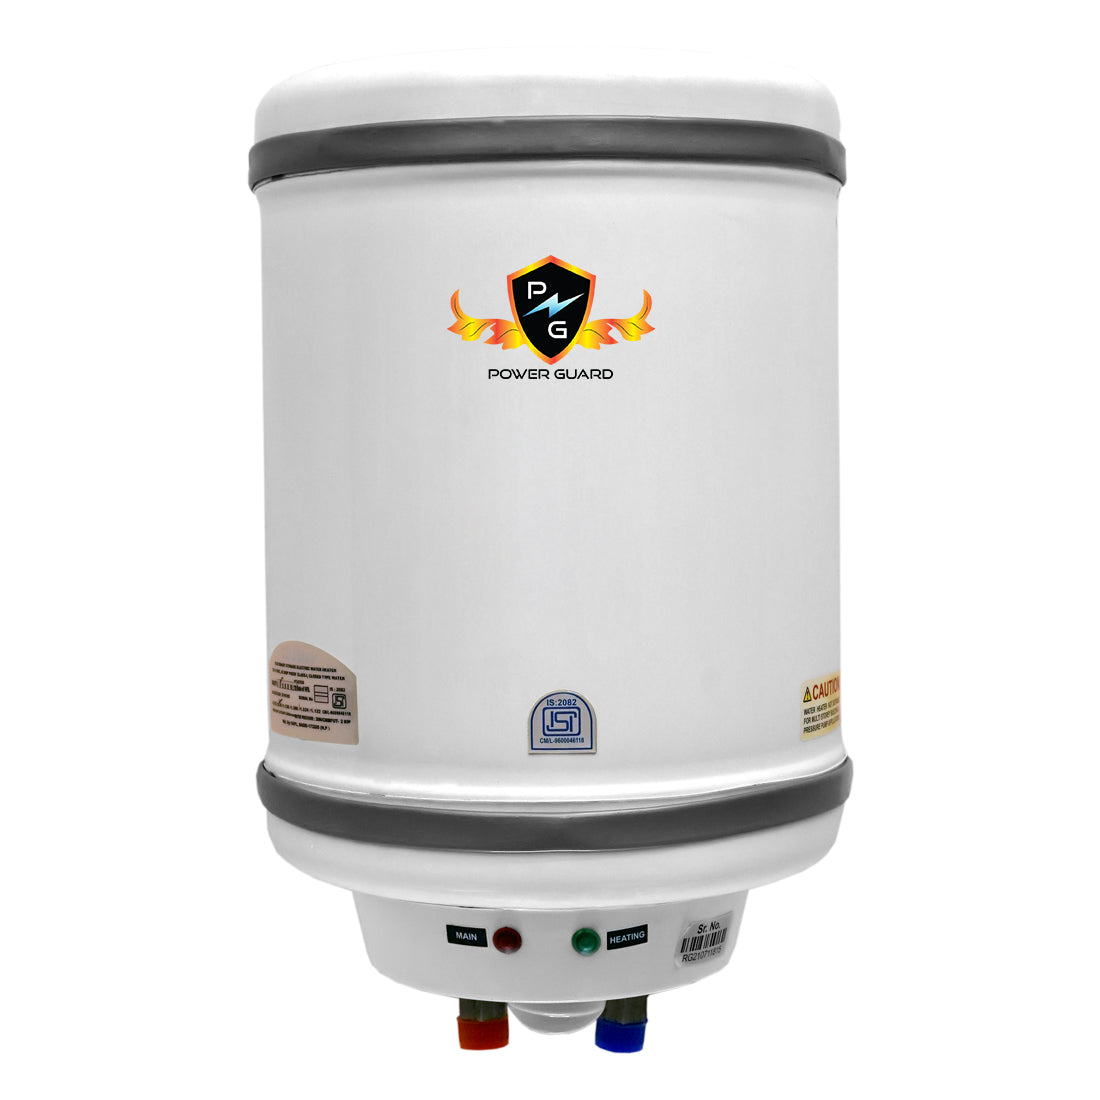 Water Geyser : Power Guard 25L Storage Water Heater Geyser (White, PG-METAL-25)